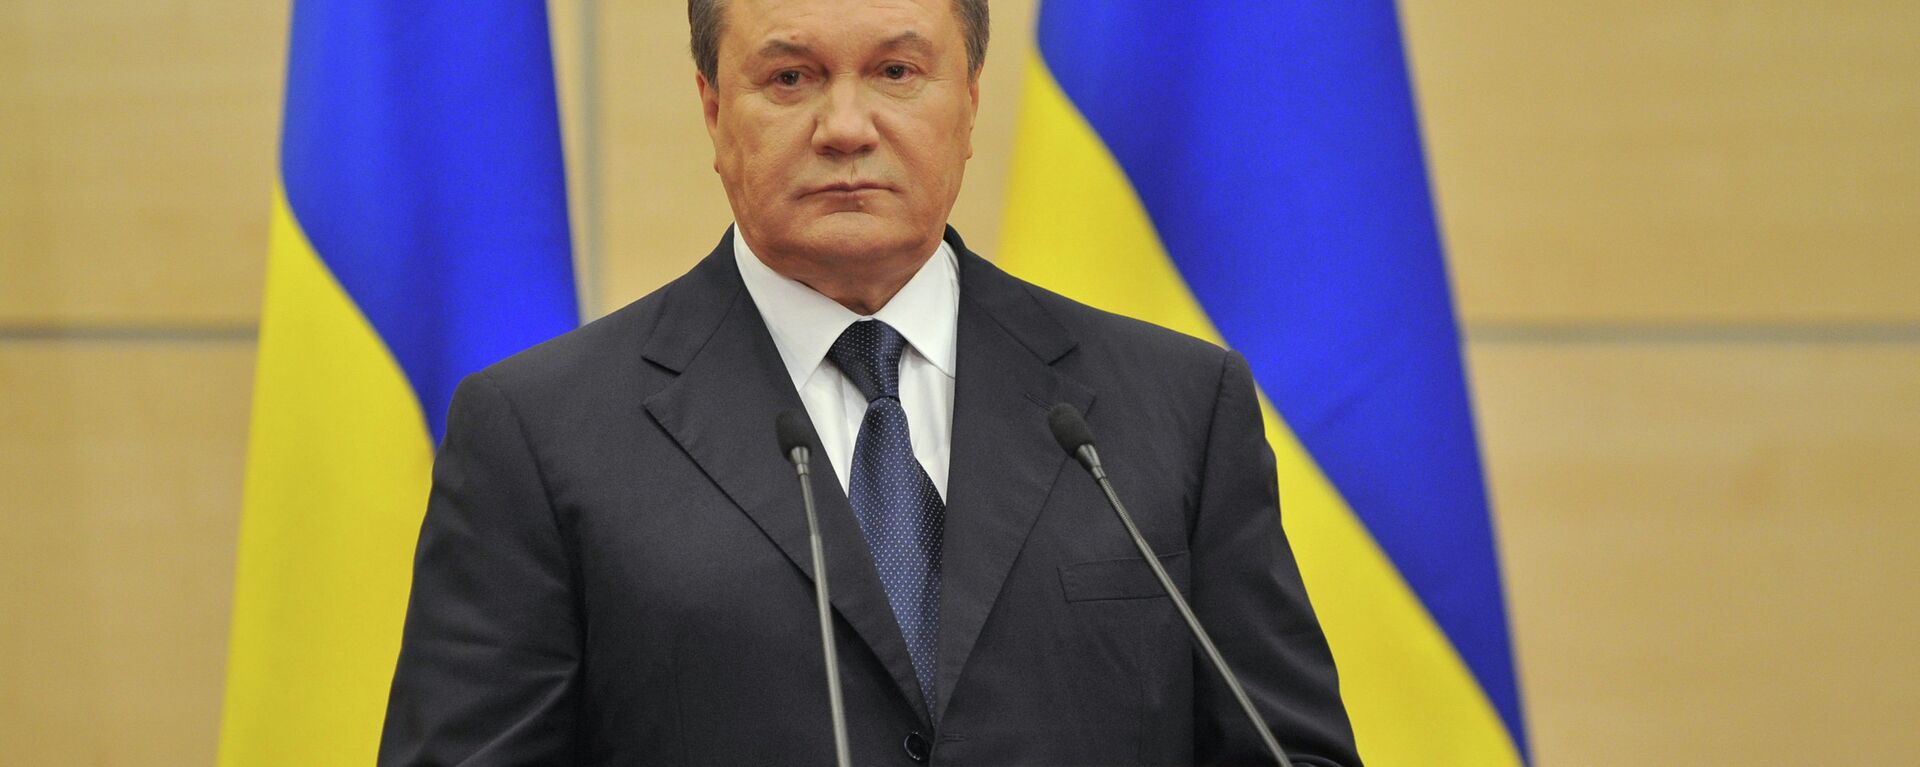 Ukrayna'nın eski devlet başkanı Viktor Yanukoviç - Sputnik Türkiye, 1920, 23.05.2022